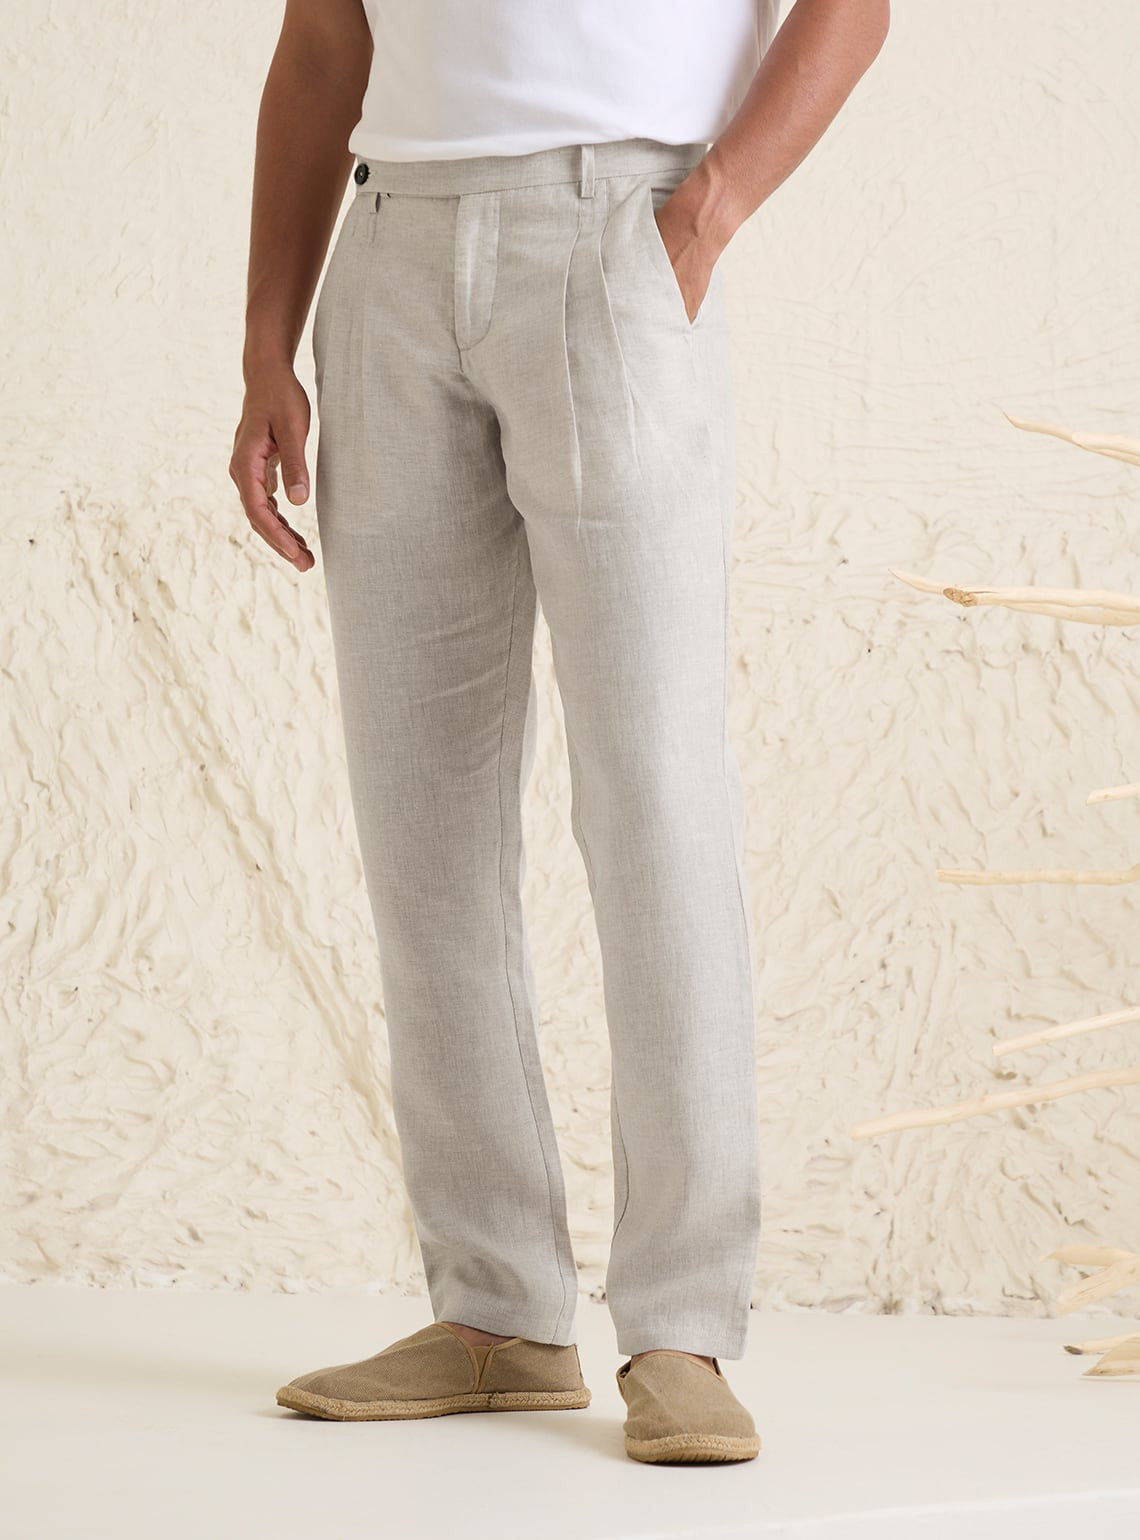 Mens Pure Linen Pants/ City Pants/ Linen Pants With 